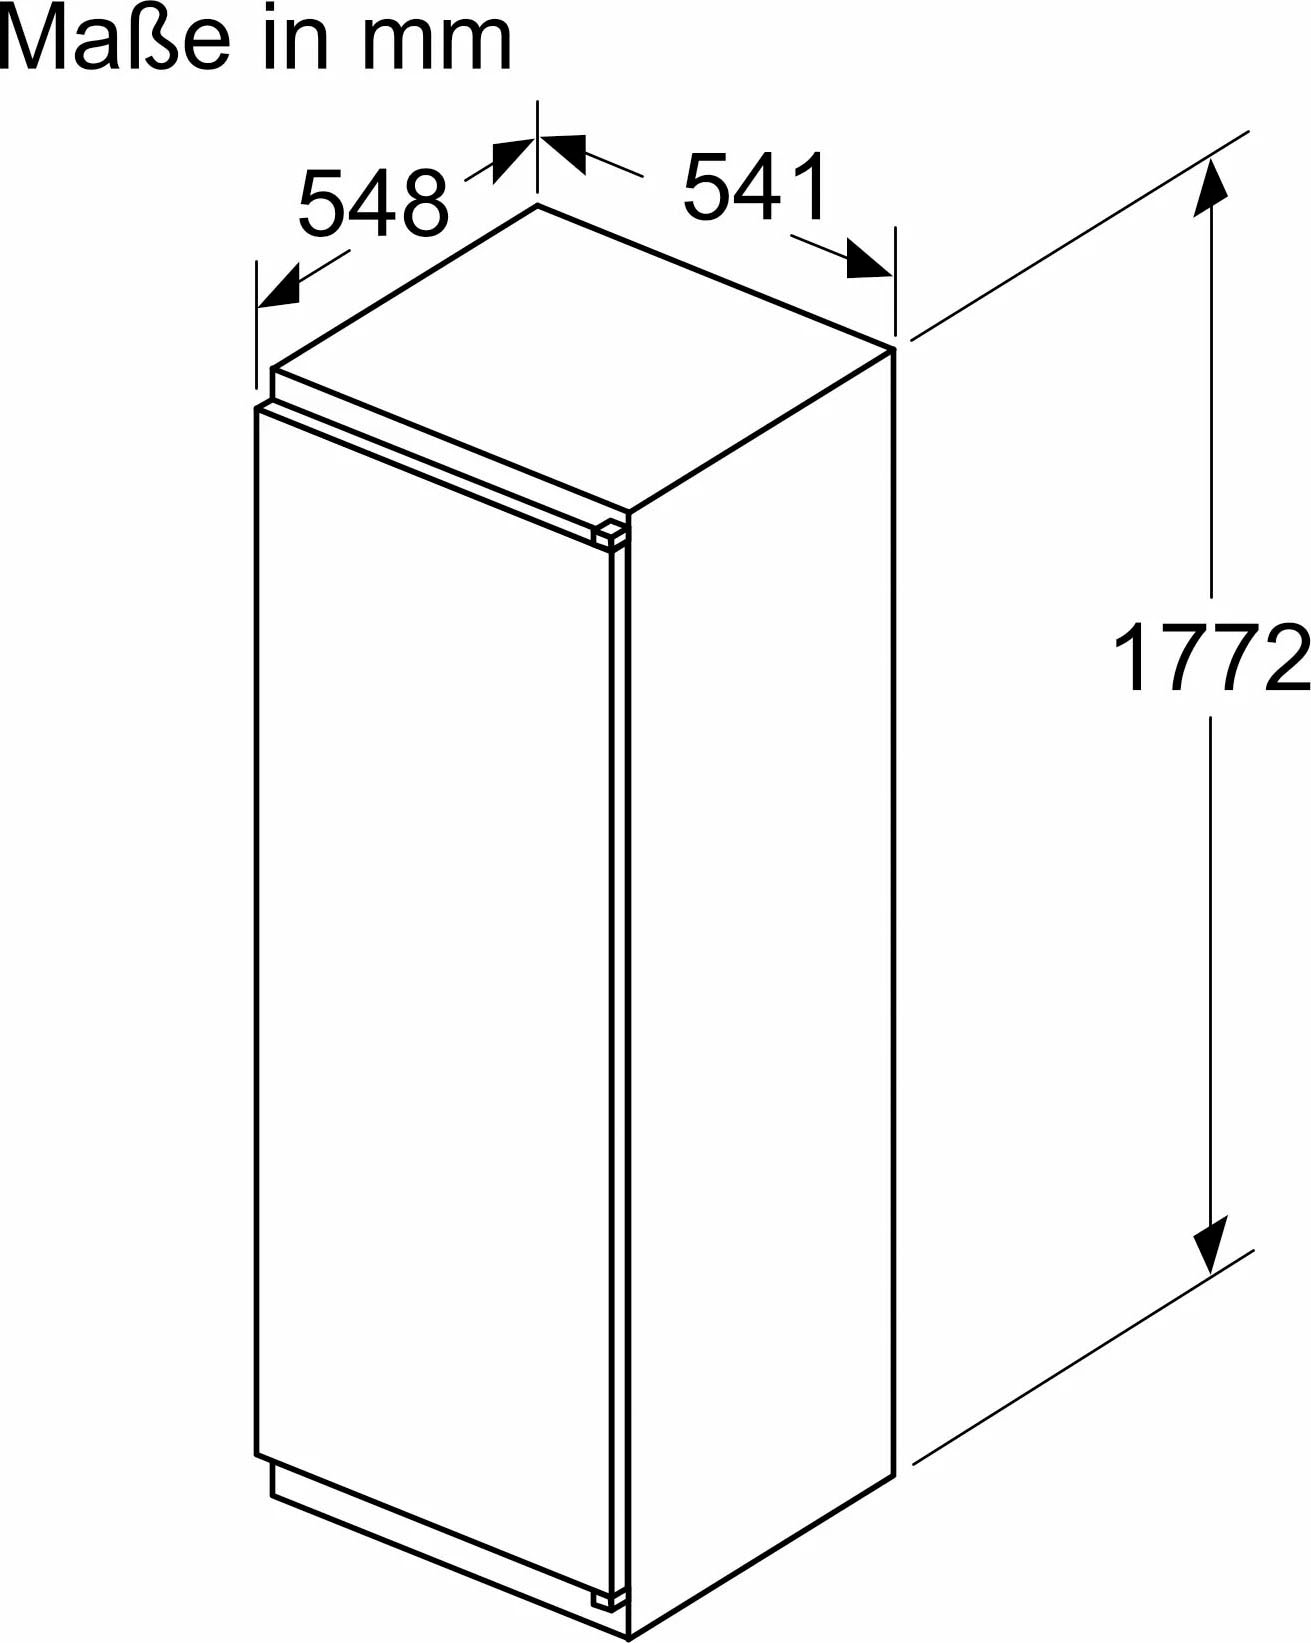 NEFF XXL Garantie breit Einbaukühlschrank 54,1 3 cm mit hoch, cm »KI1811SE0«, KI1811SE0, 177,2 Jahren